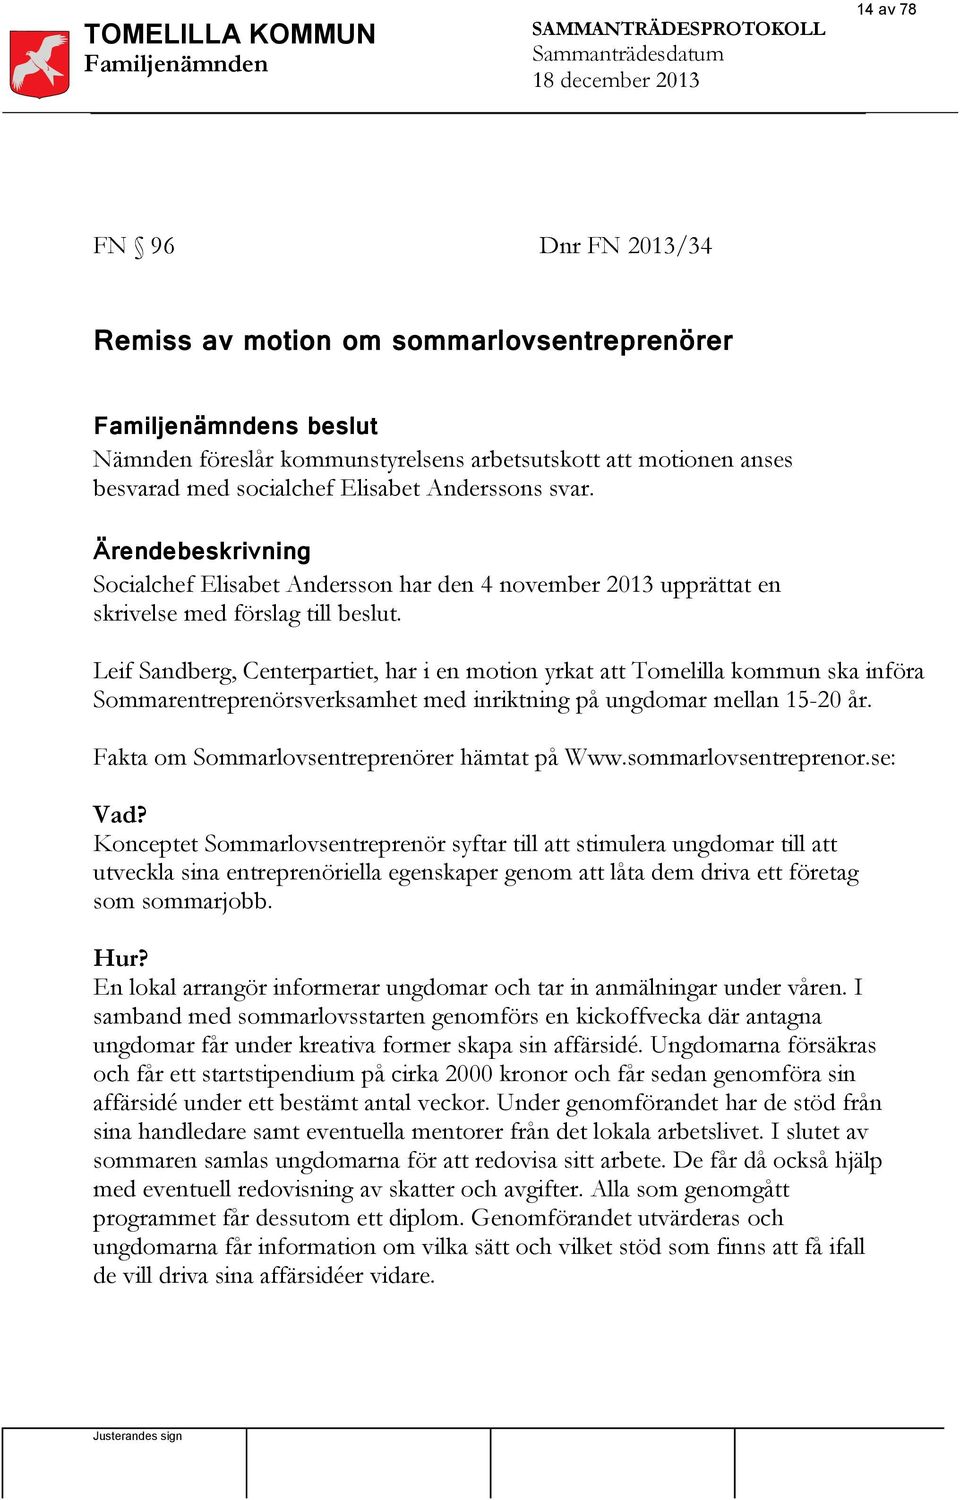 Ärendebeskrivning Socialchef Elisabet Andersson har den 4 november 2013 upprättat en skrivelse med förslag till beslut.